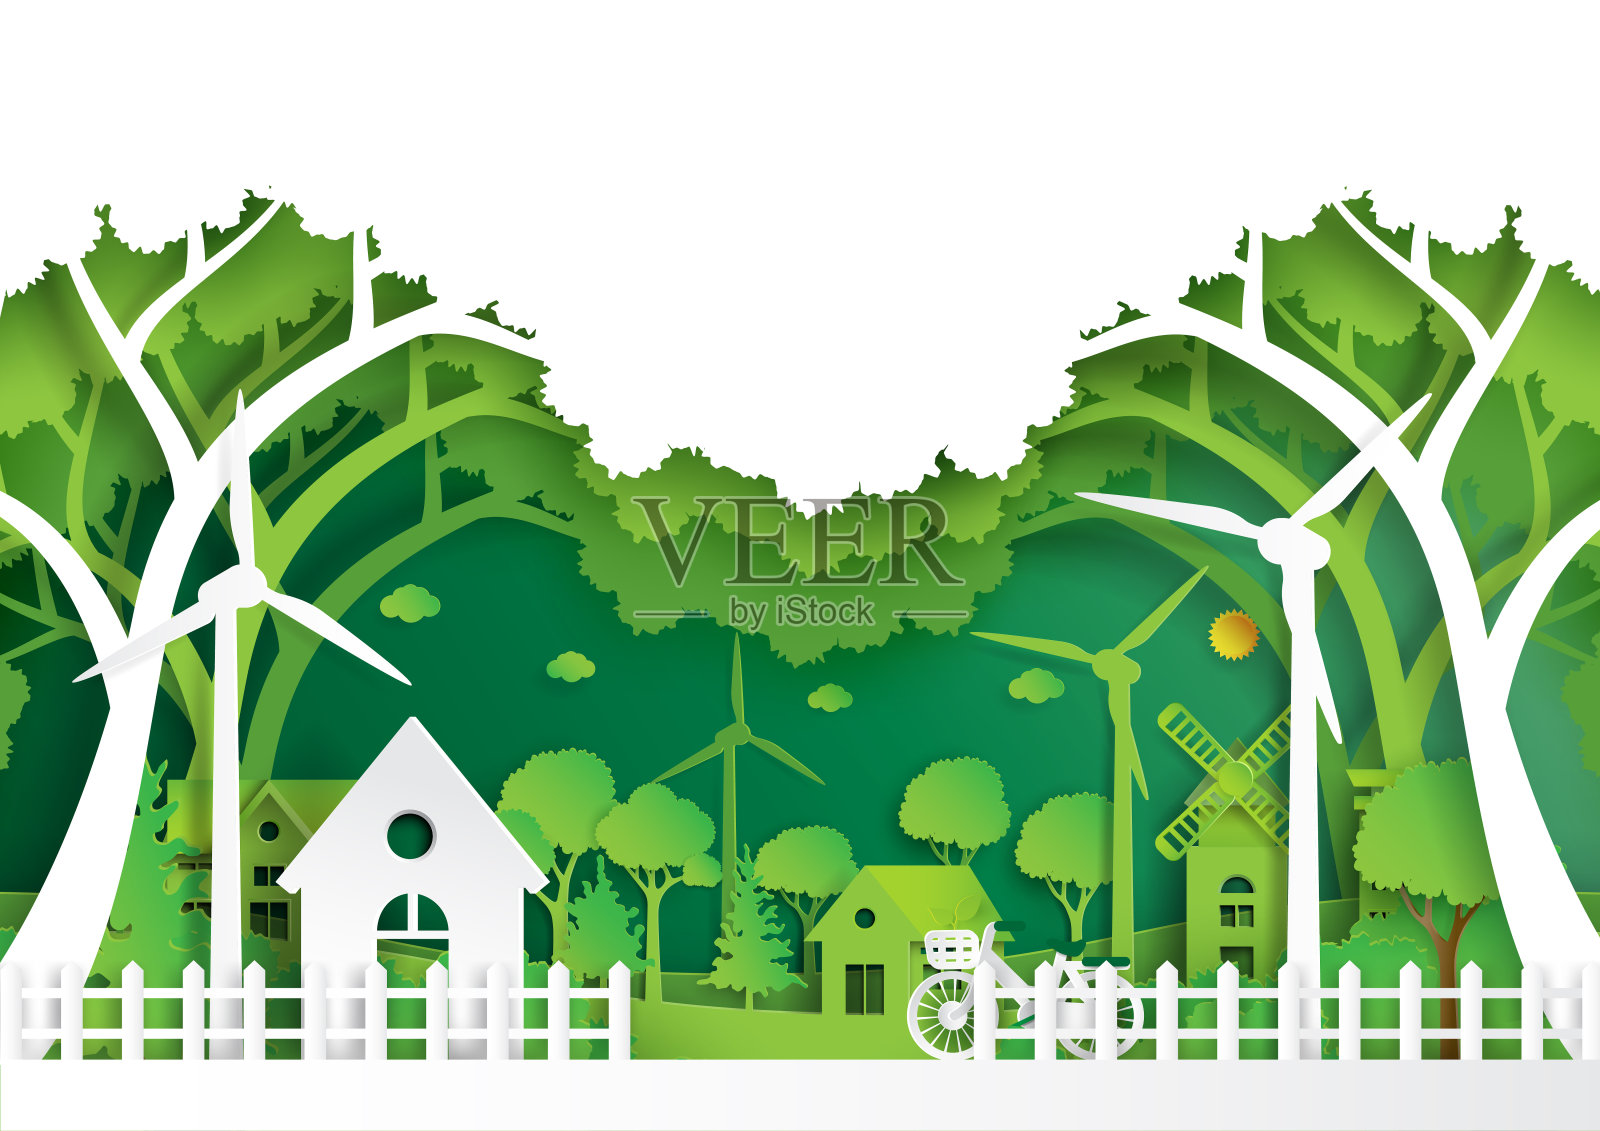 绿色环保的环境概念纸艺术风格插画图片素材